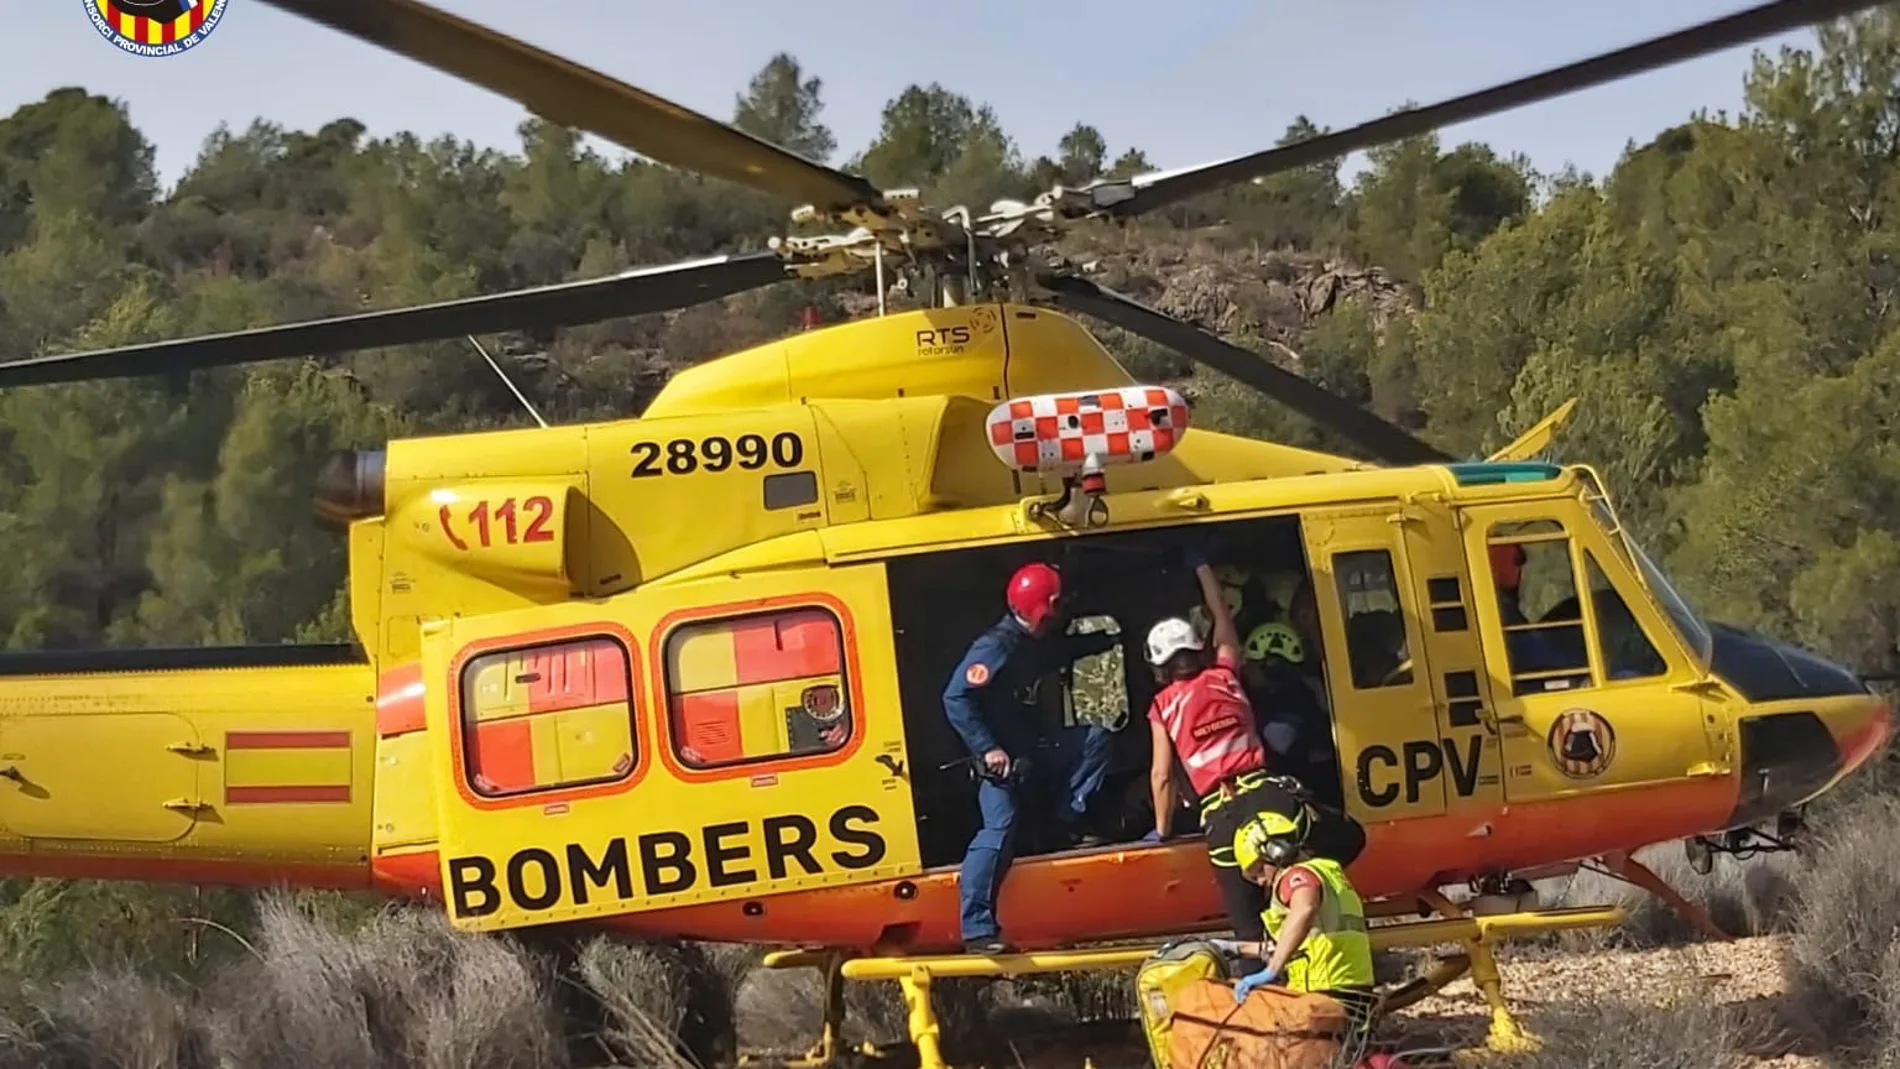 Antifraude cuestiona el uso del helicóptero y de las ambulancias en el rescate de la amiga de la secretaria autonómica